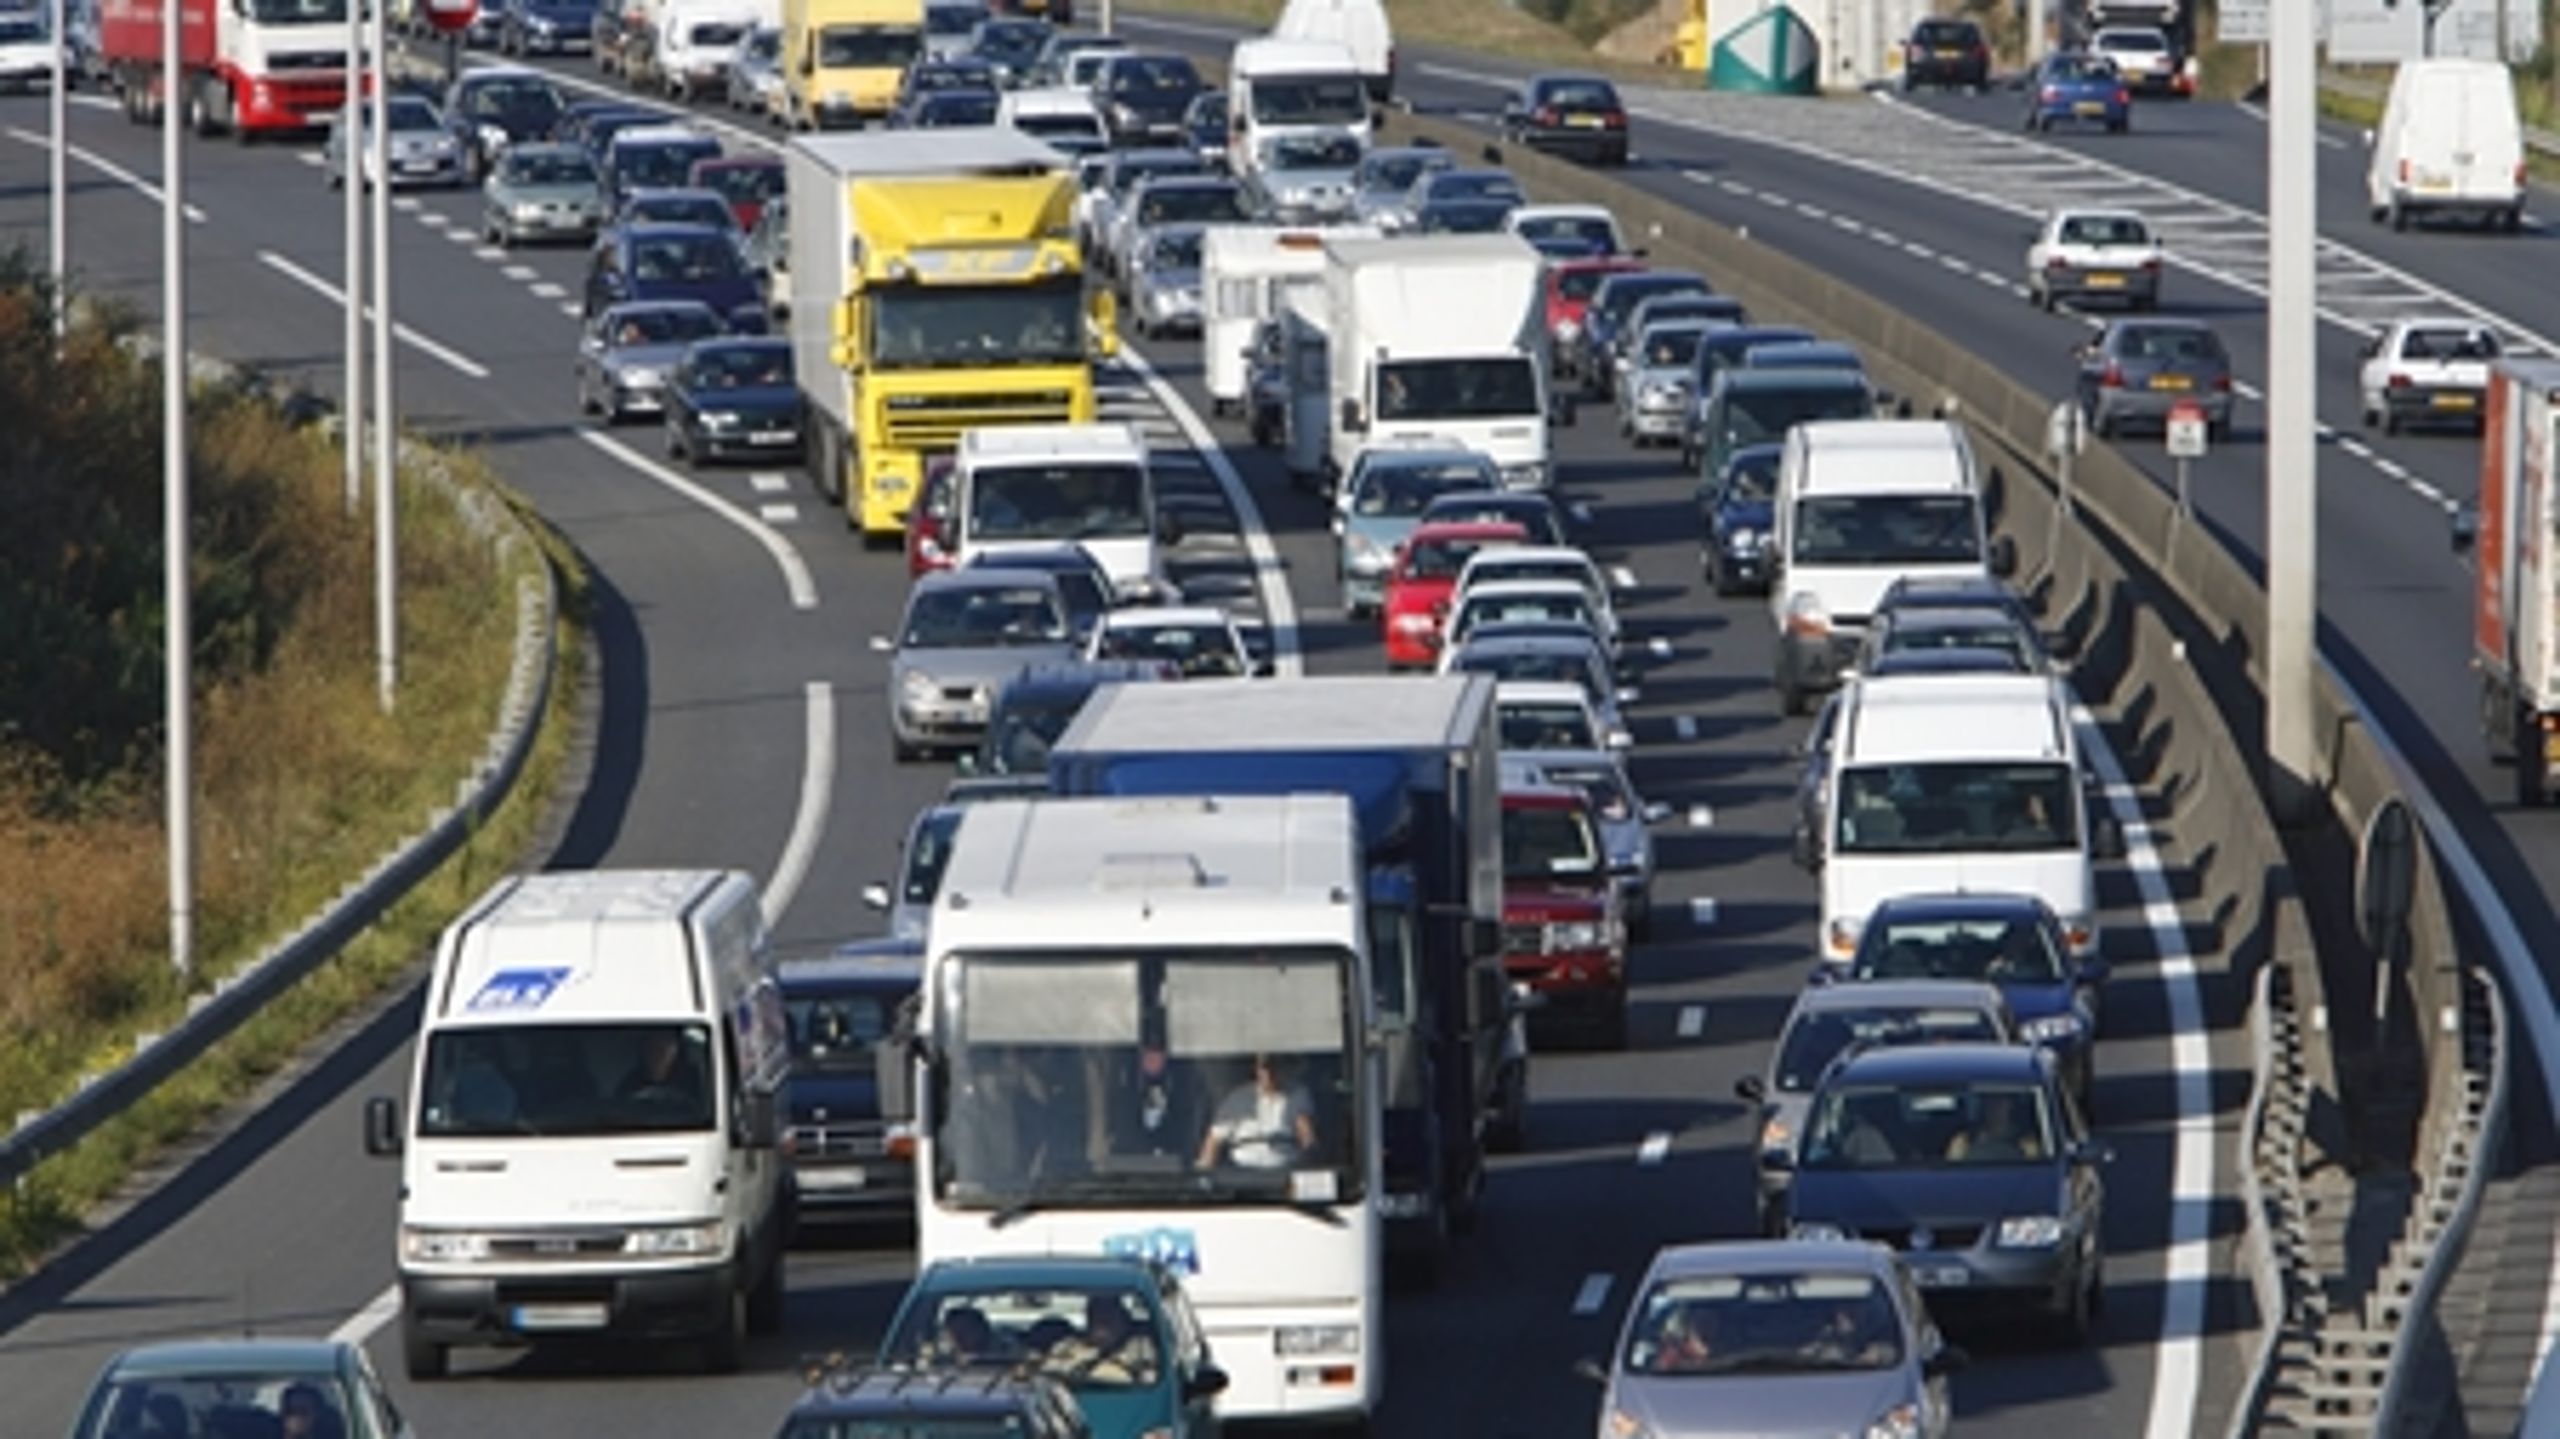 Det Miljøøkonomiske Råd anbefaler i ny rapport, at trafikken skal koncentreres på de mest befærdede veje for at reducere trafikstøjen på de mindre veje.